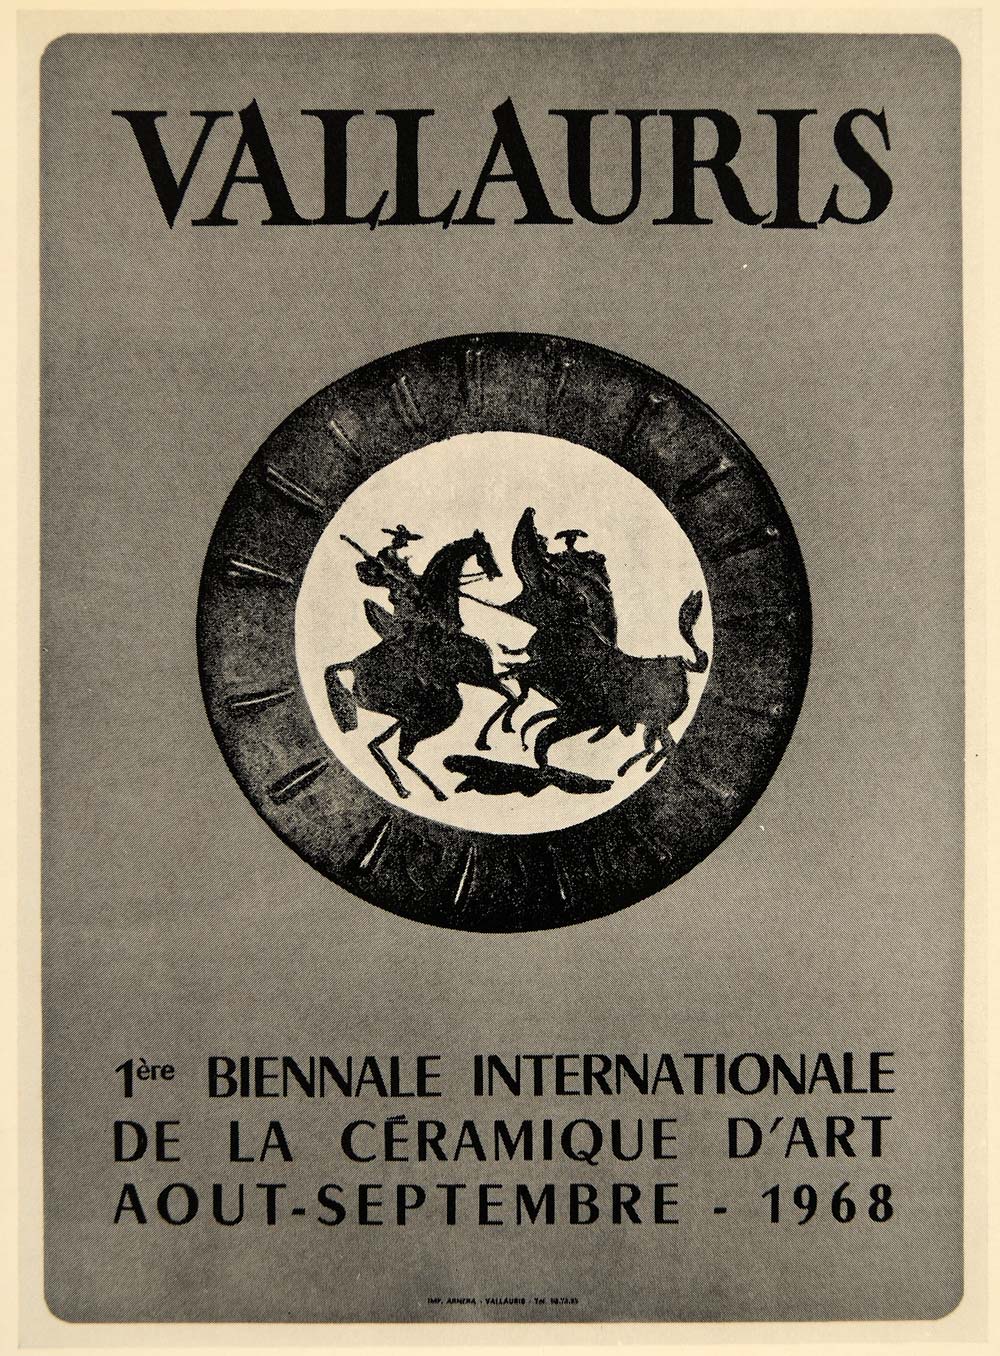 1971 Print Picasso Ceramic Arts Vallauris Poster 1968 - ORIGINAL PIC3